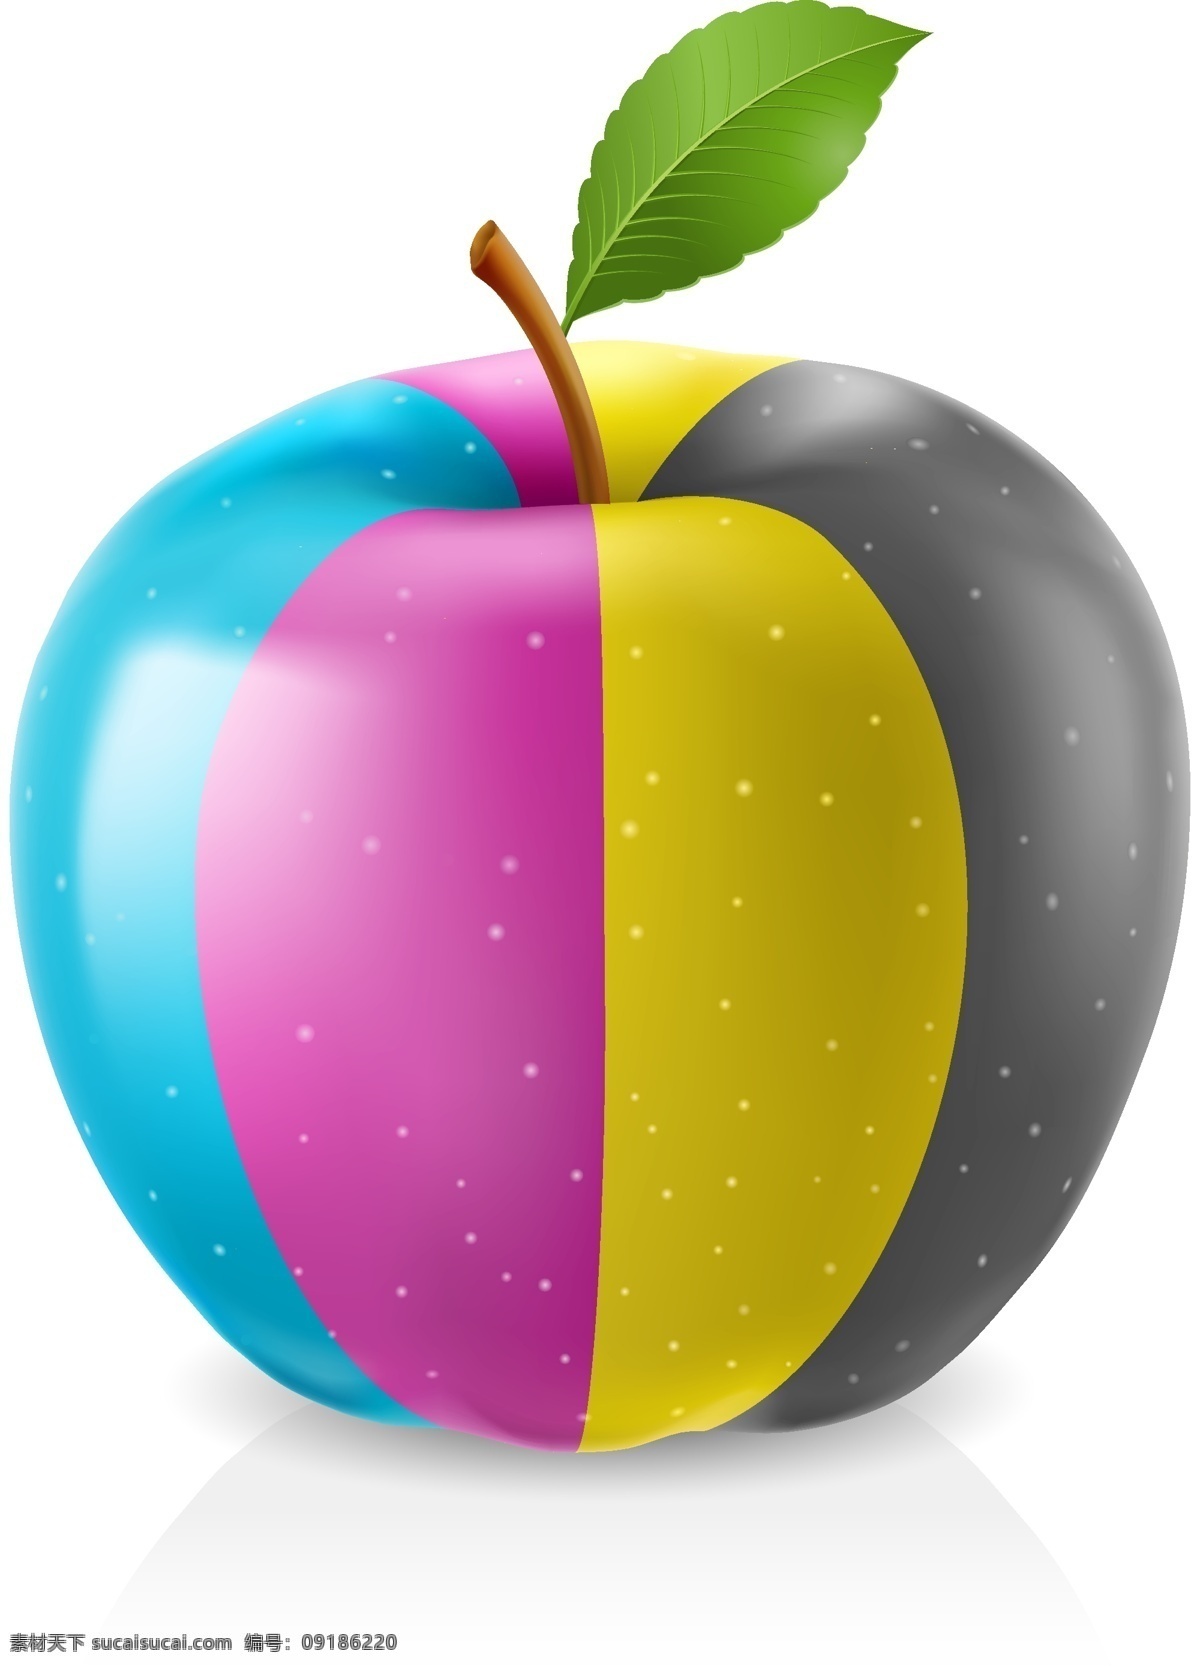 彩色 色彩 四种颜色 彩卡 色彩样品 色谱 苹果 彩色苹果 生活百科 矢量素材 白色